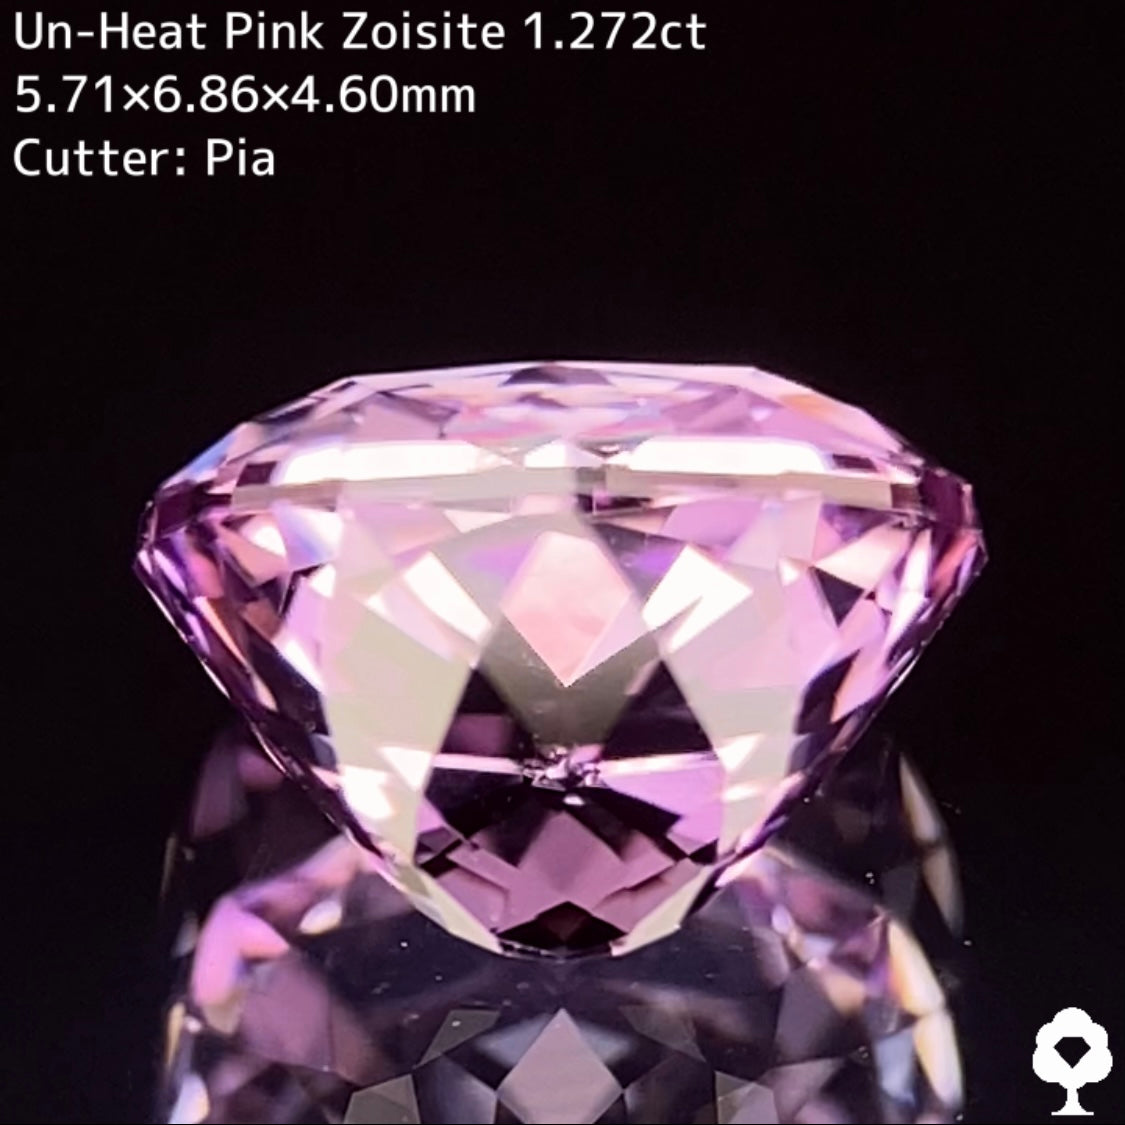 麗しきヴァイオレティッシュピンクの1ctアップの美しい結晶が完璧なカットに★非加熱ピンクゾイサイト1.272ct